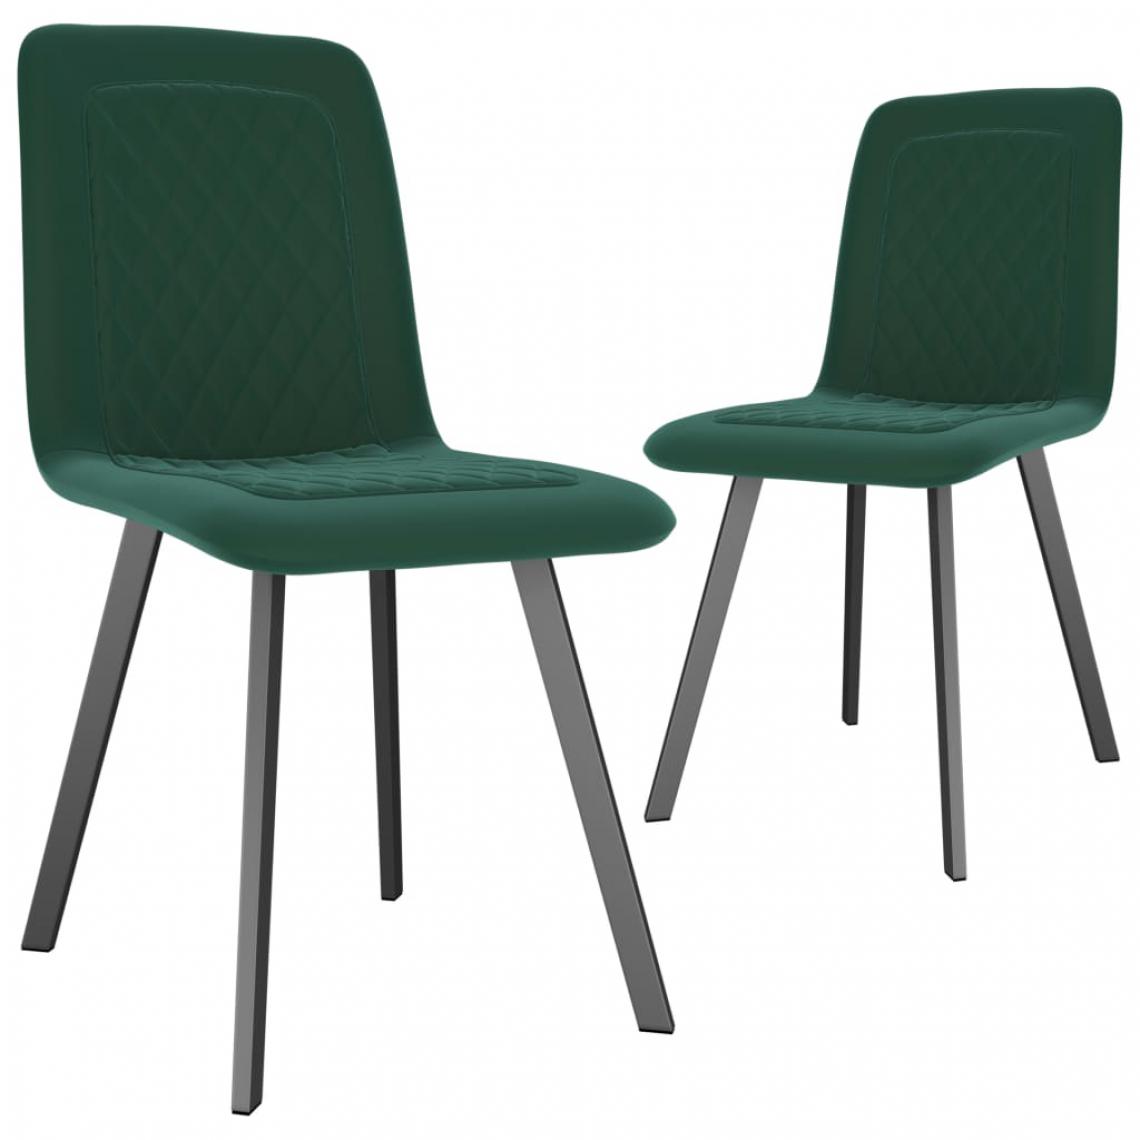 Icaverne - Stylé Fauteuils et chaises collection Beyrouth Chaises de salle à manger 2 pcs Vert Velours - Chaises